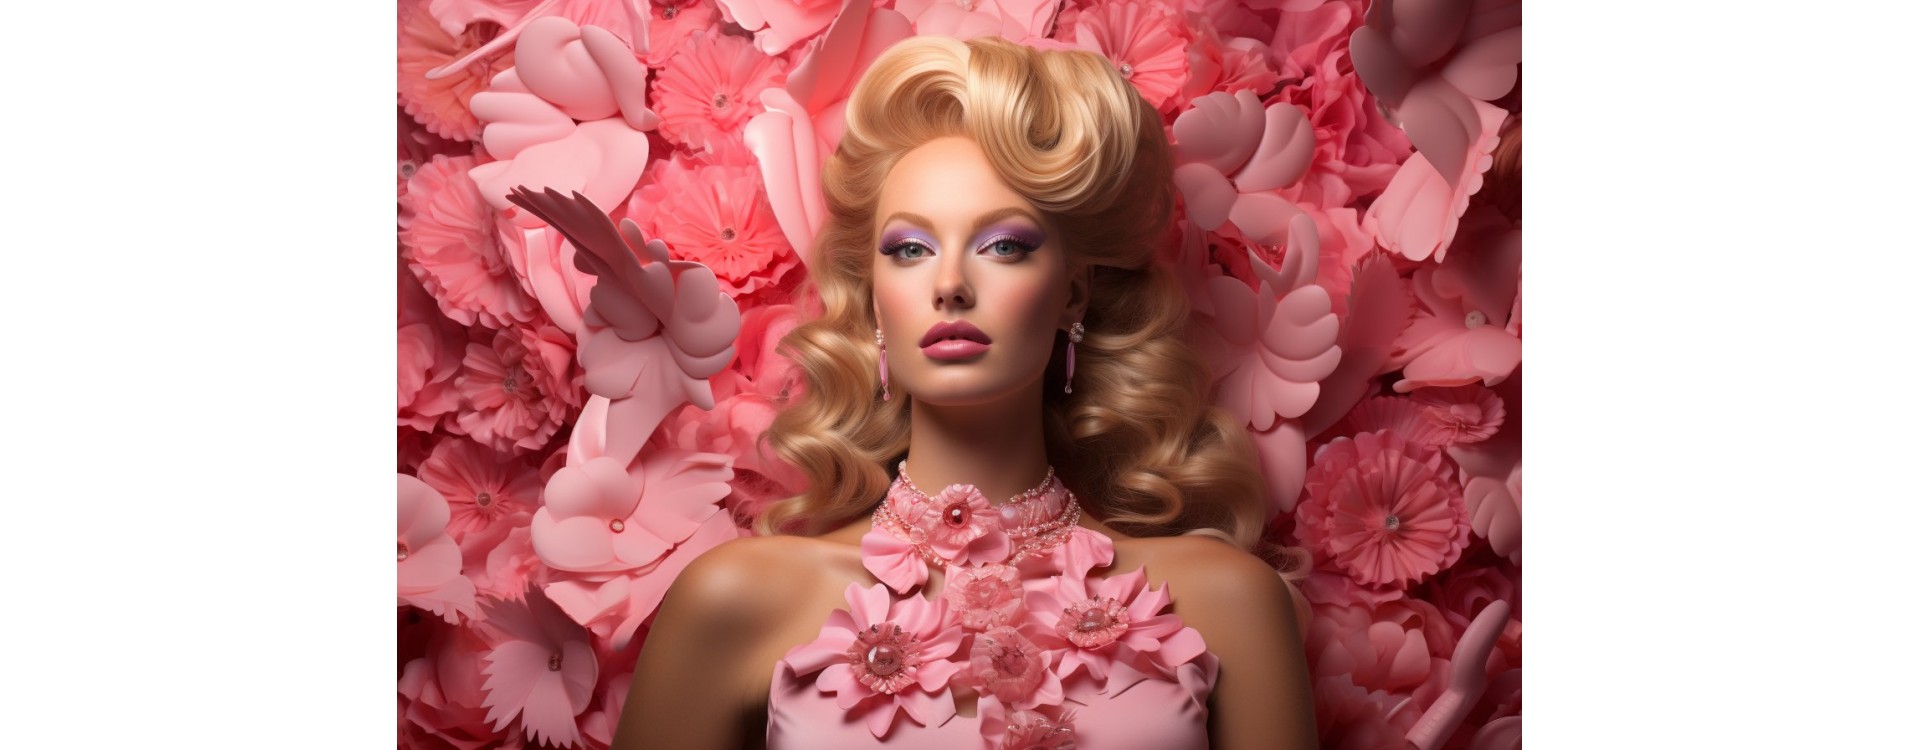 Le phénomène du "Barbie Botox" : entre fascination et inquiétude